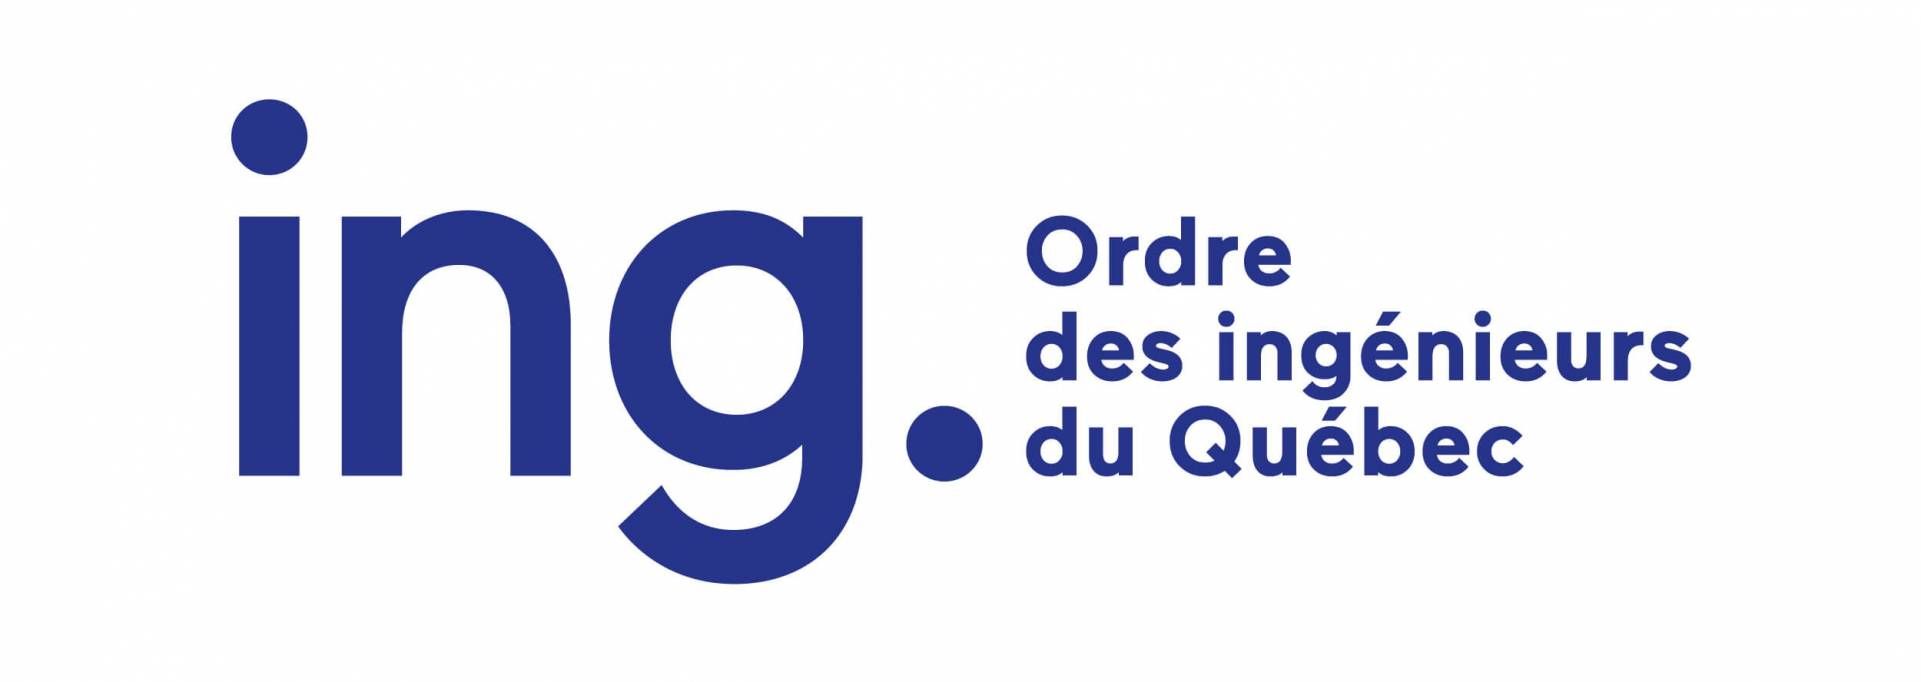 Ordre des ingenieurs du Quebec Logo V1